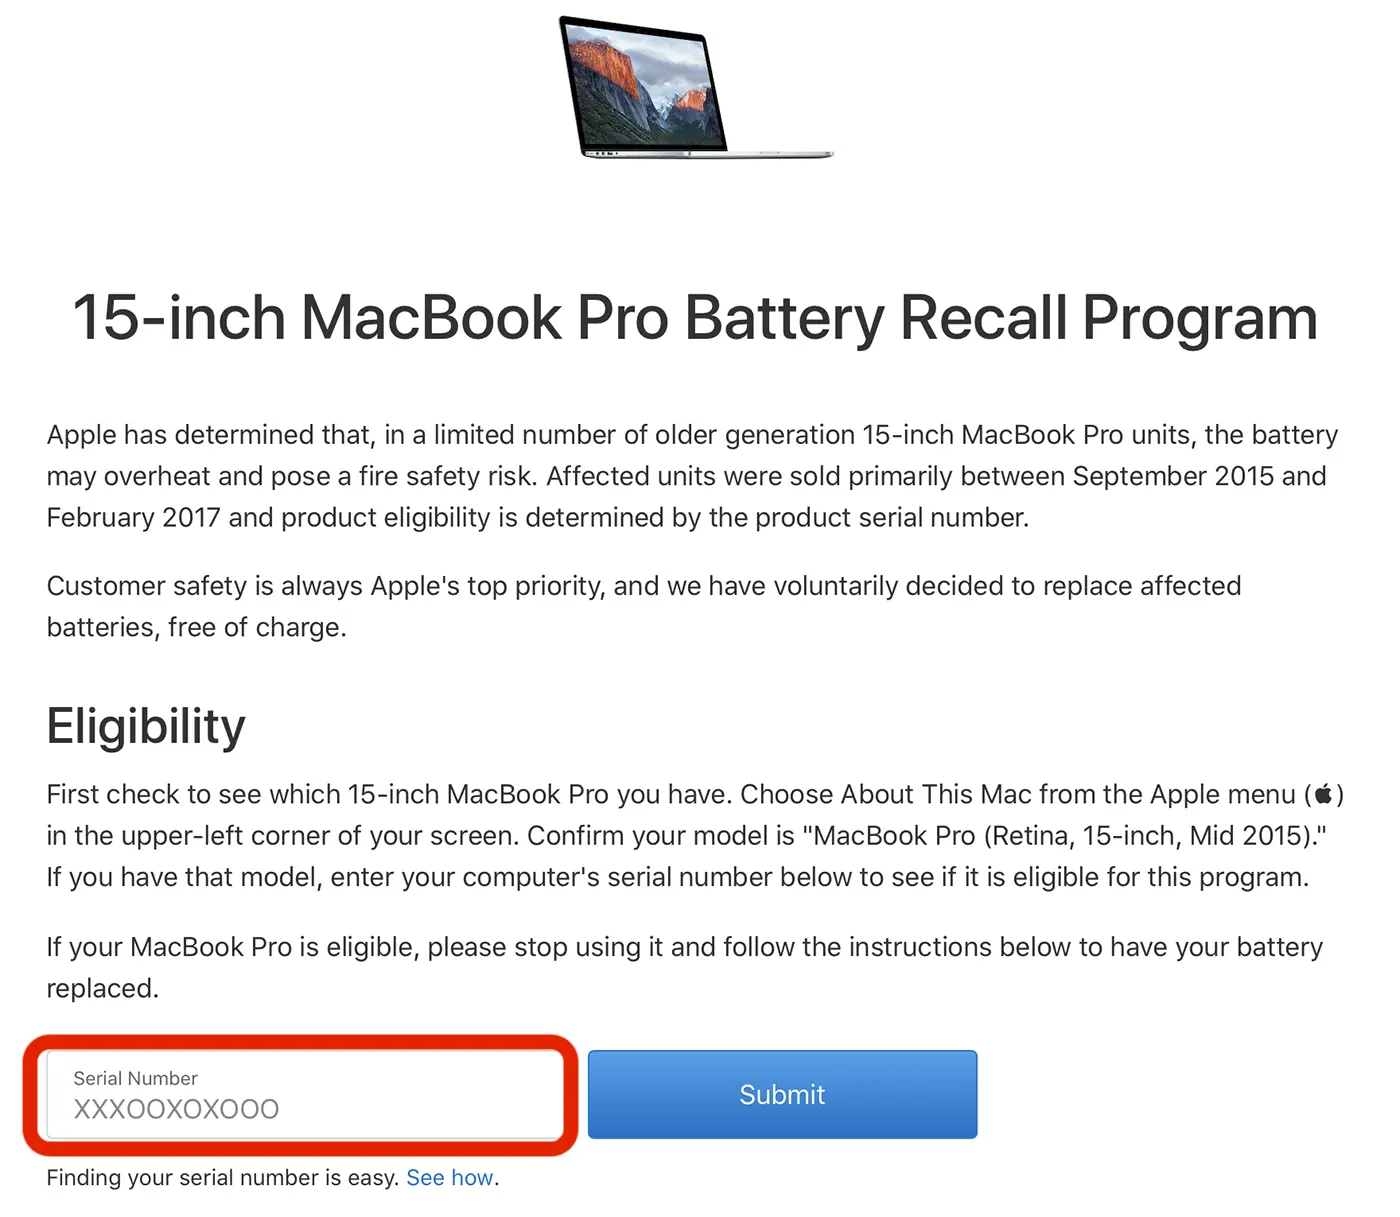 Anda dapat mengganti baterai MacBook Anda secara gratis. Lihat kondisi